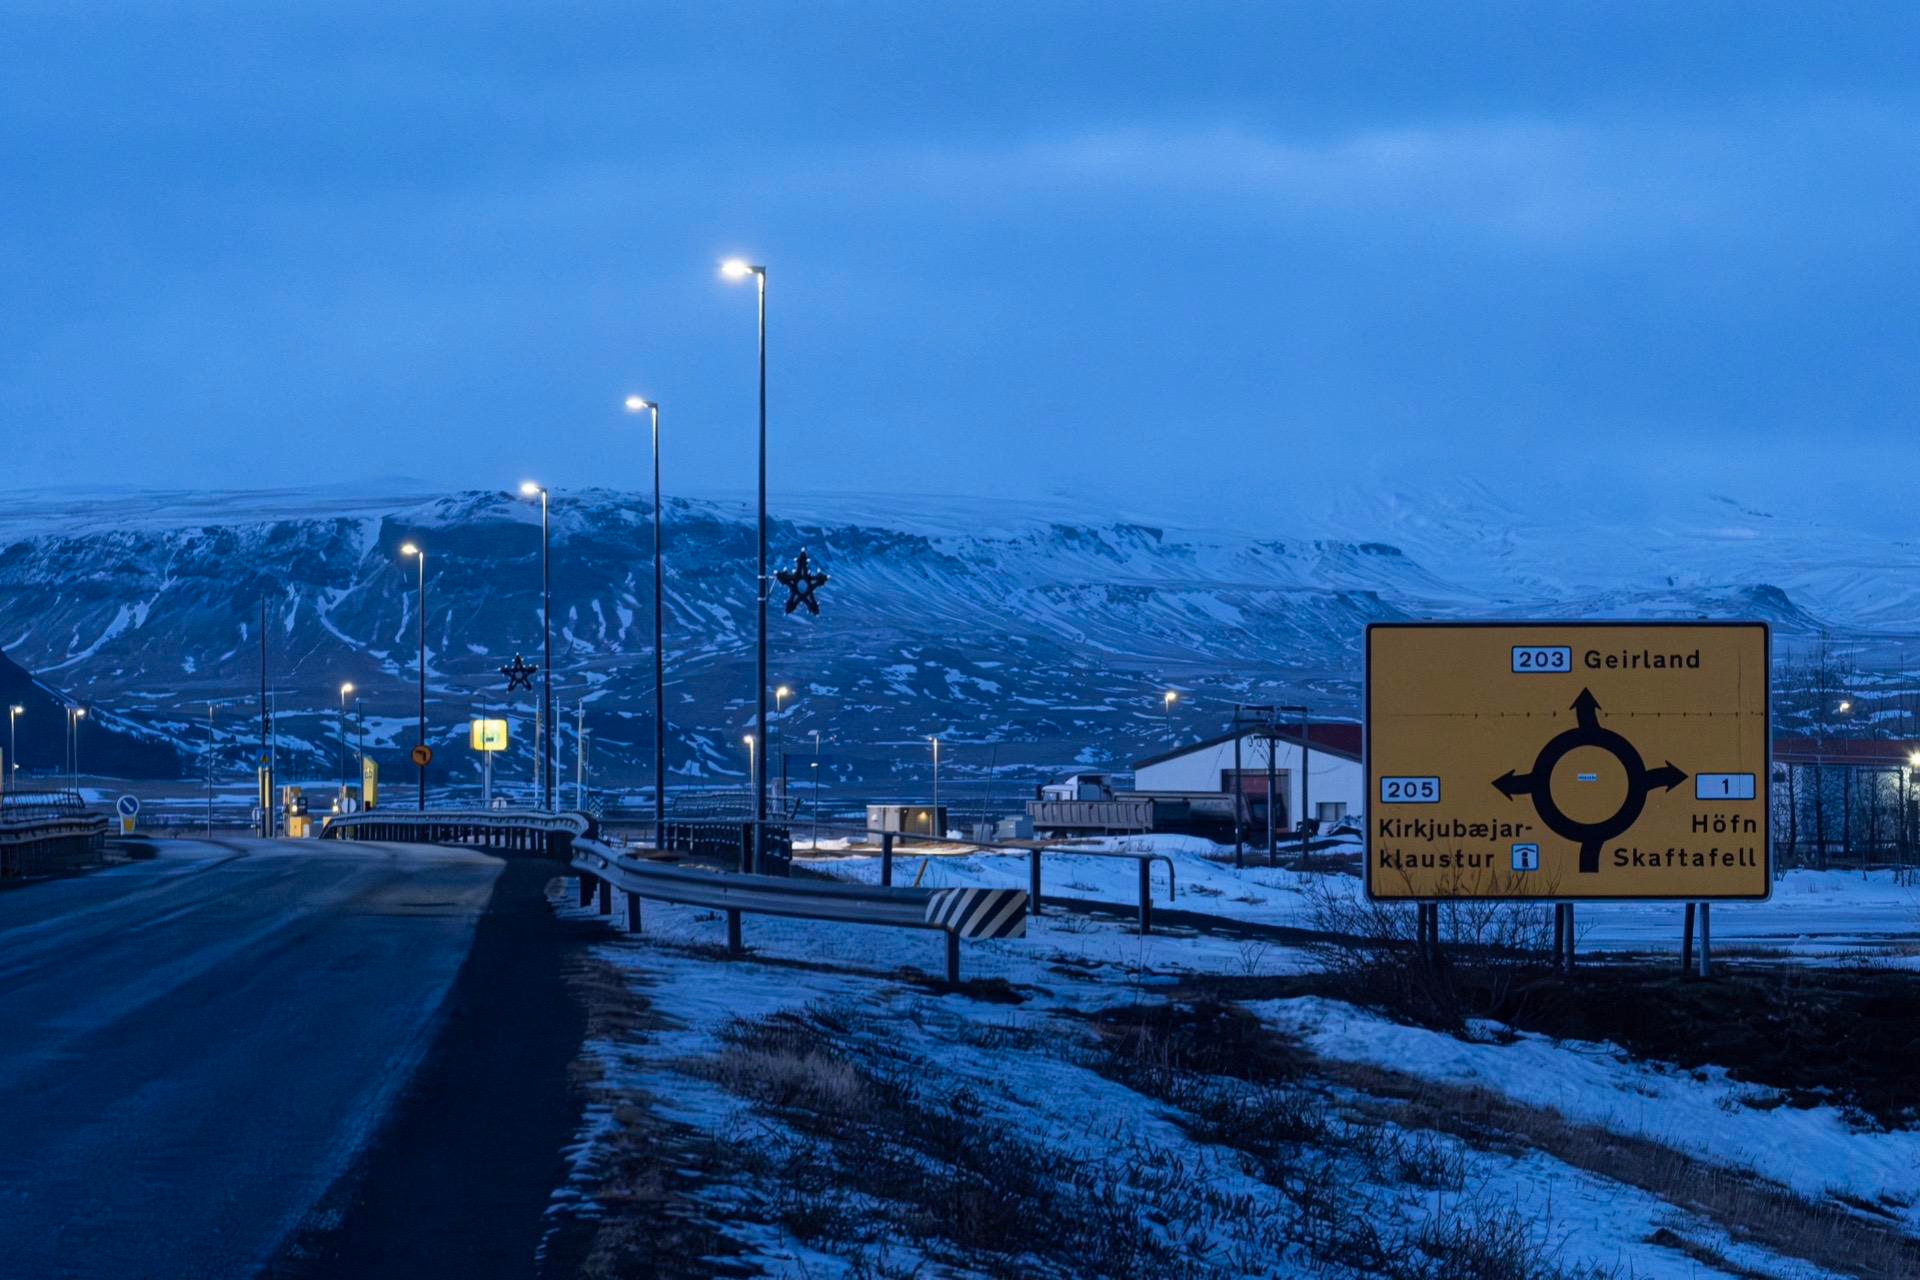 这里是冰岛南岸一号公路上的一座小镇，名叫教堂镇，这里只有两百多人口,淳朴善良好客,每天蓝调时分的教堂